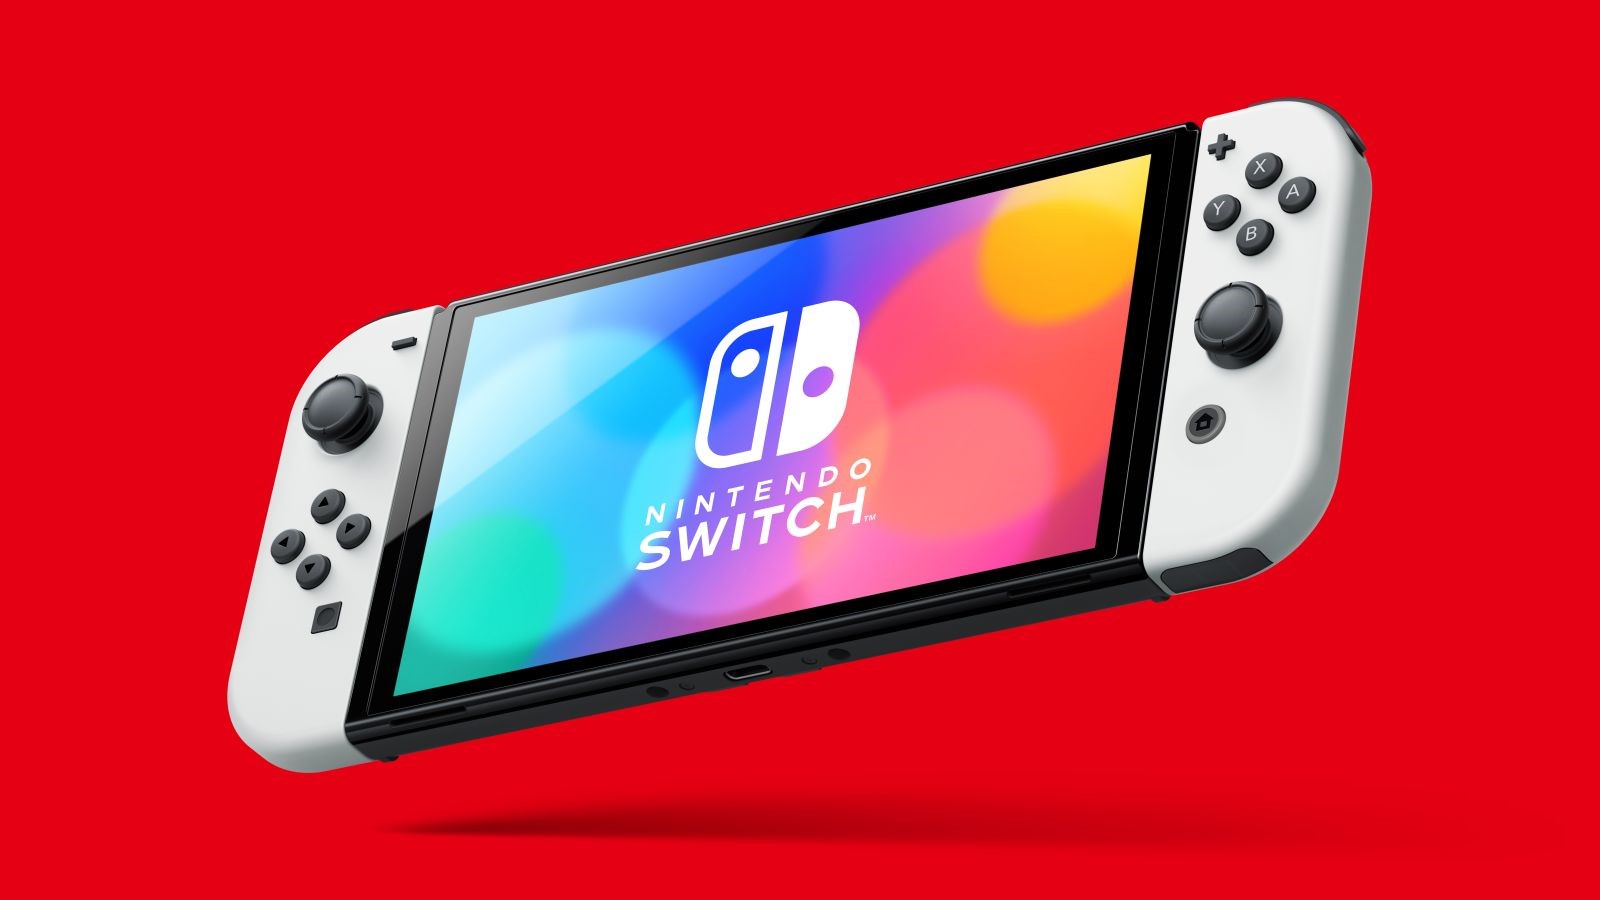 Nintendo službeno predstavio novi model Switcha, nije ono što smo očekivali  - Igraće konzole @ Bug.hr